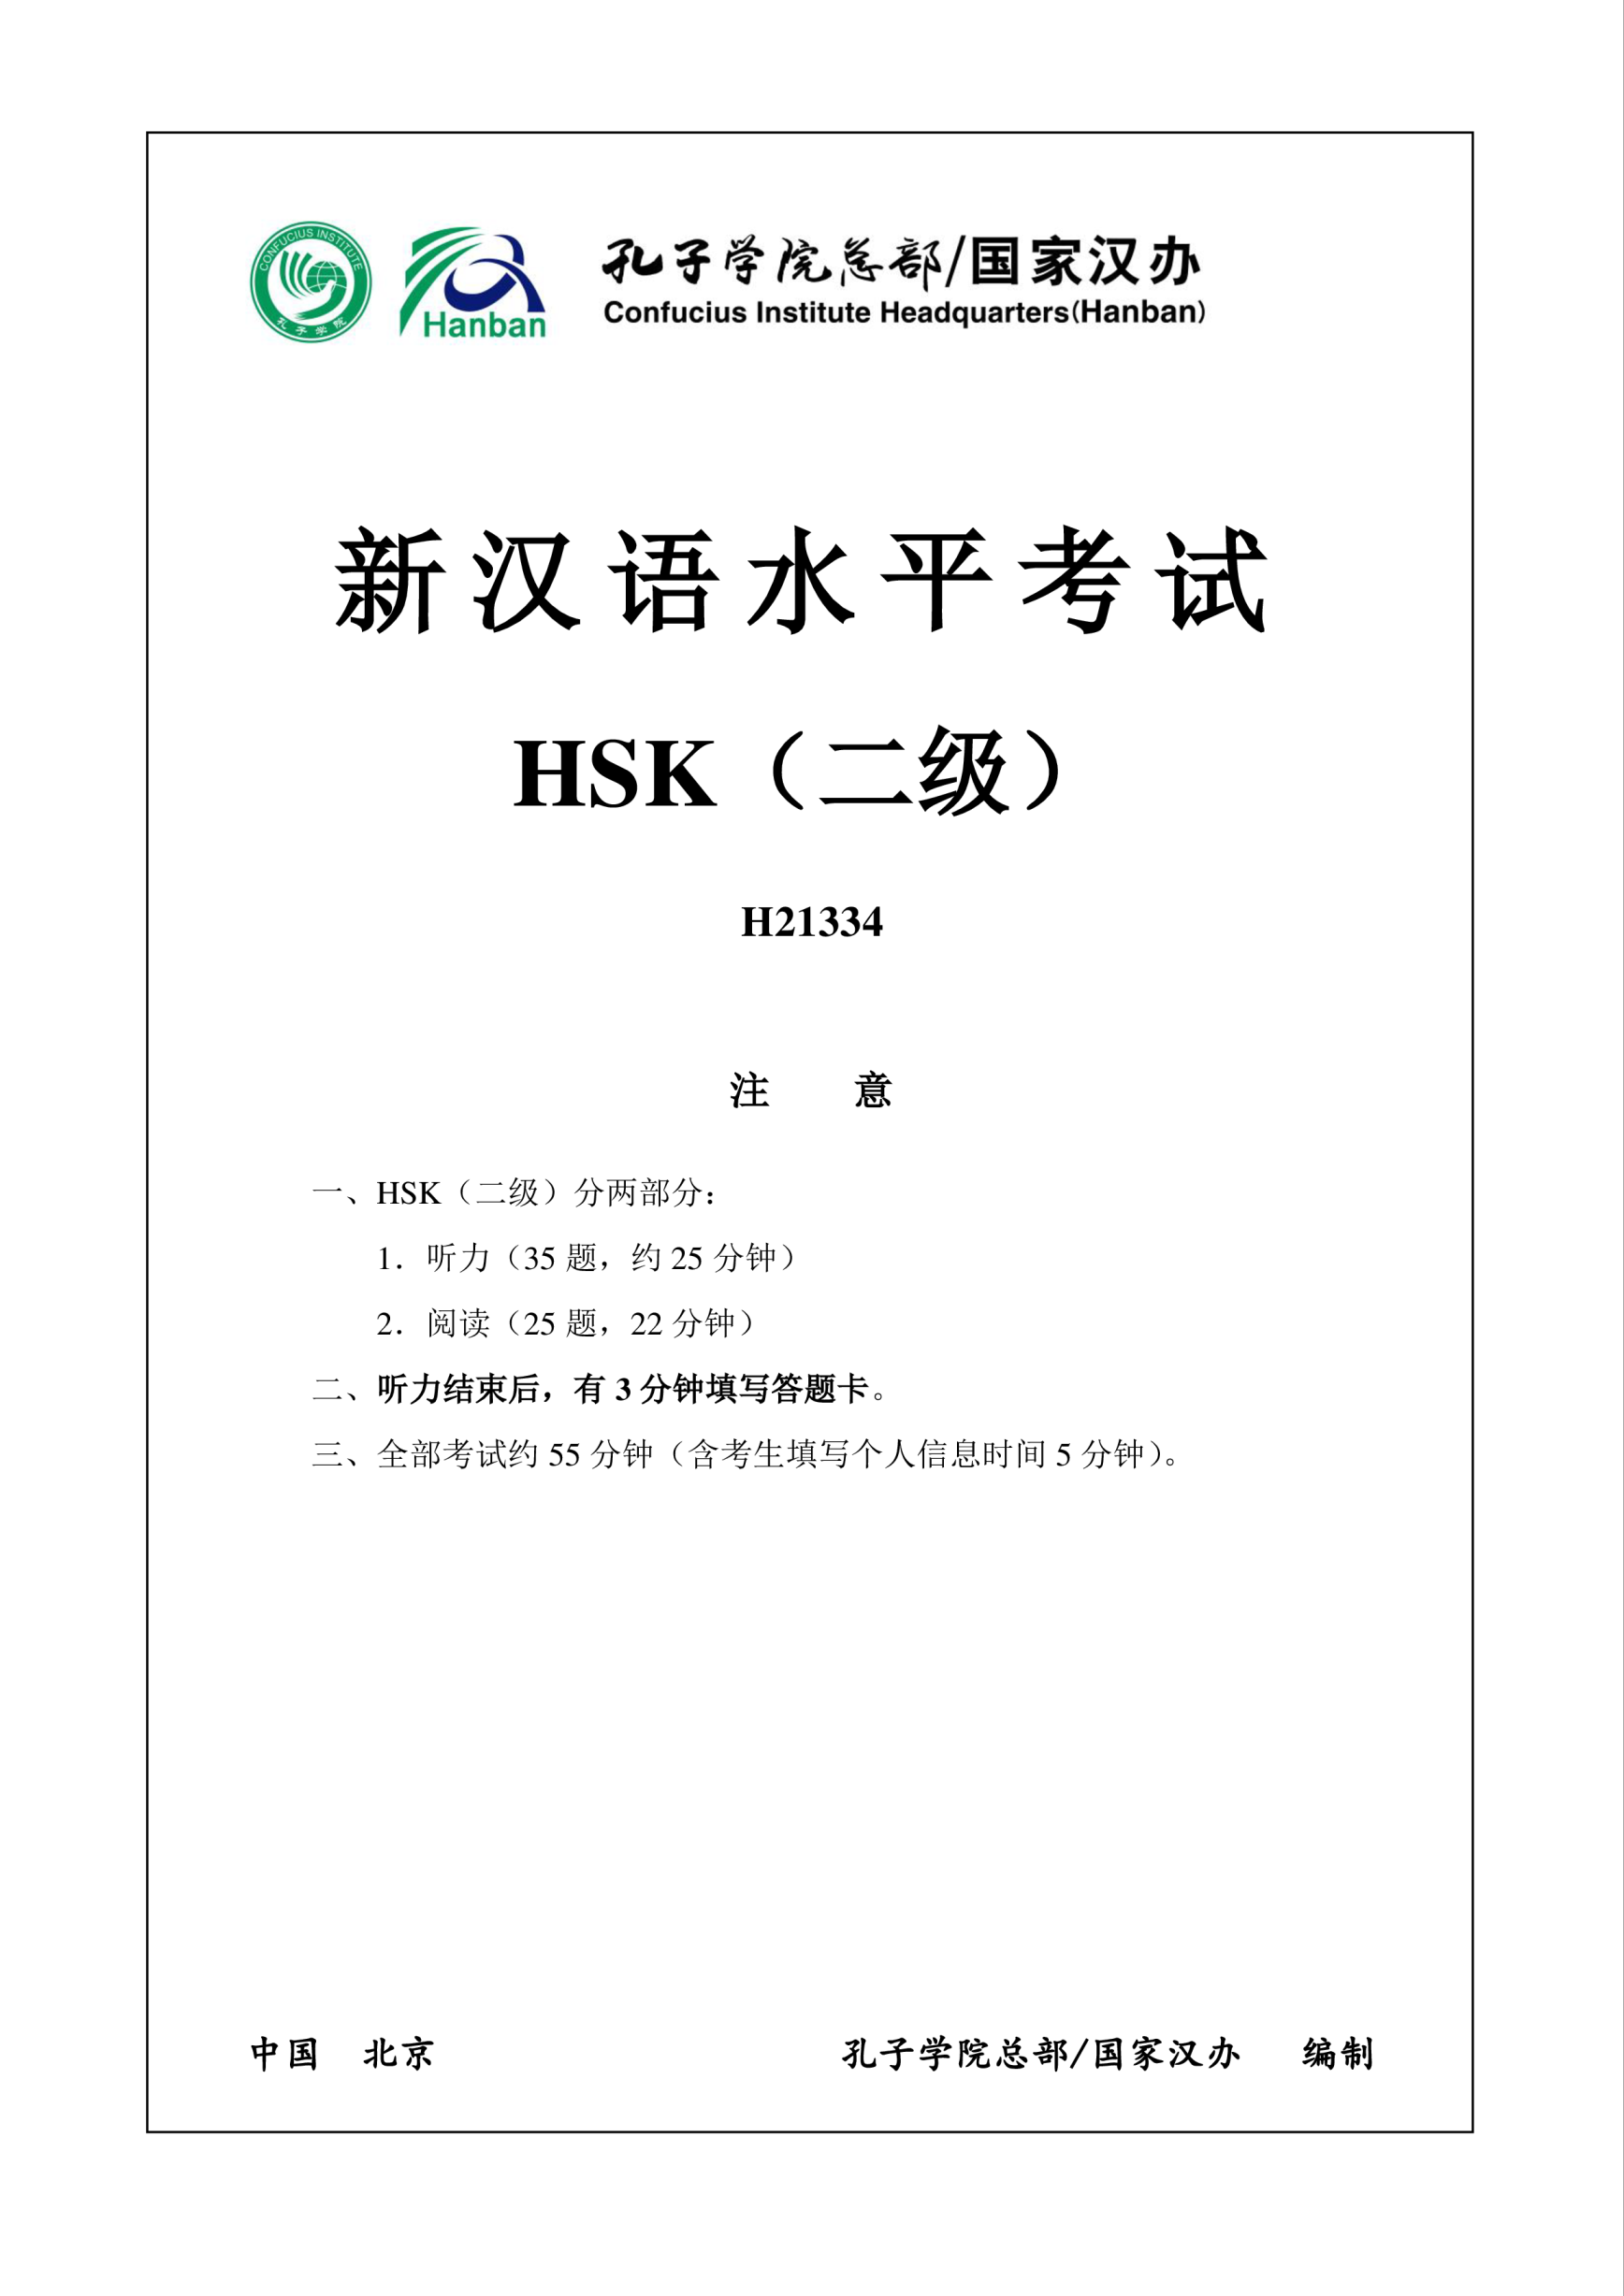 Vorschaubild der VorlageHSK2 Chinese Exam including Answers # HSK2 H21334